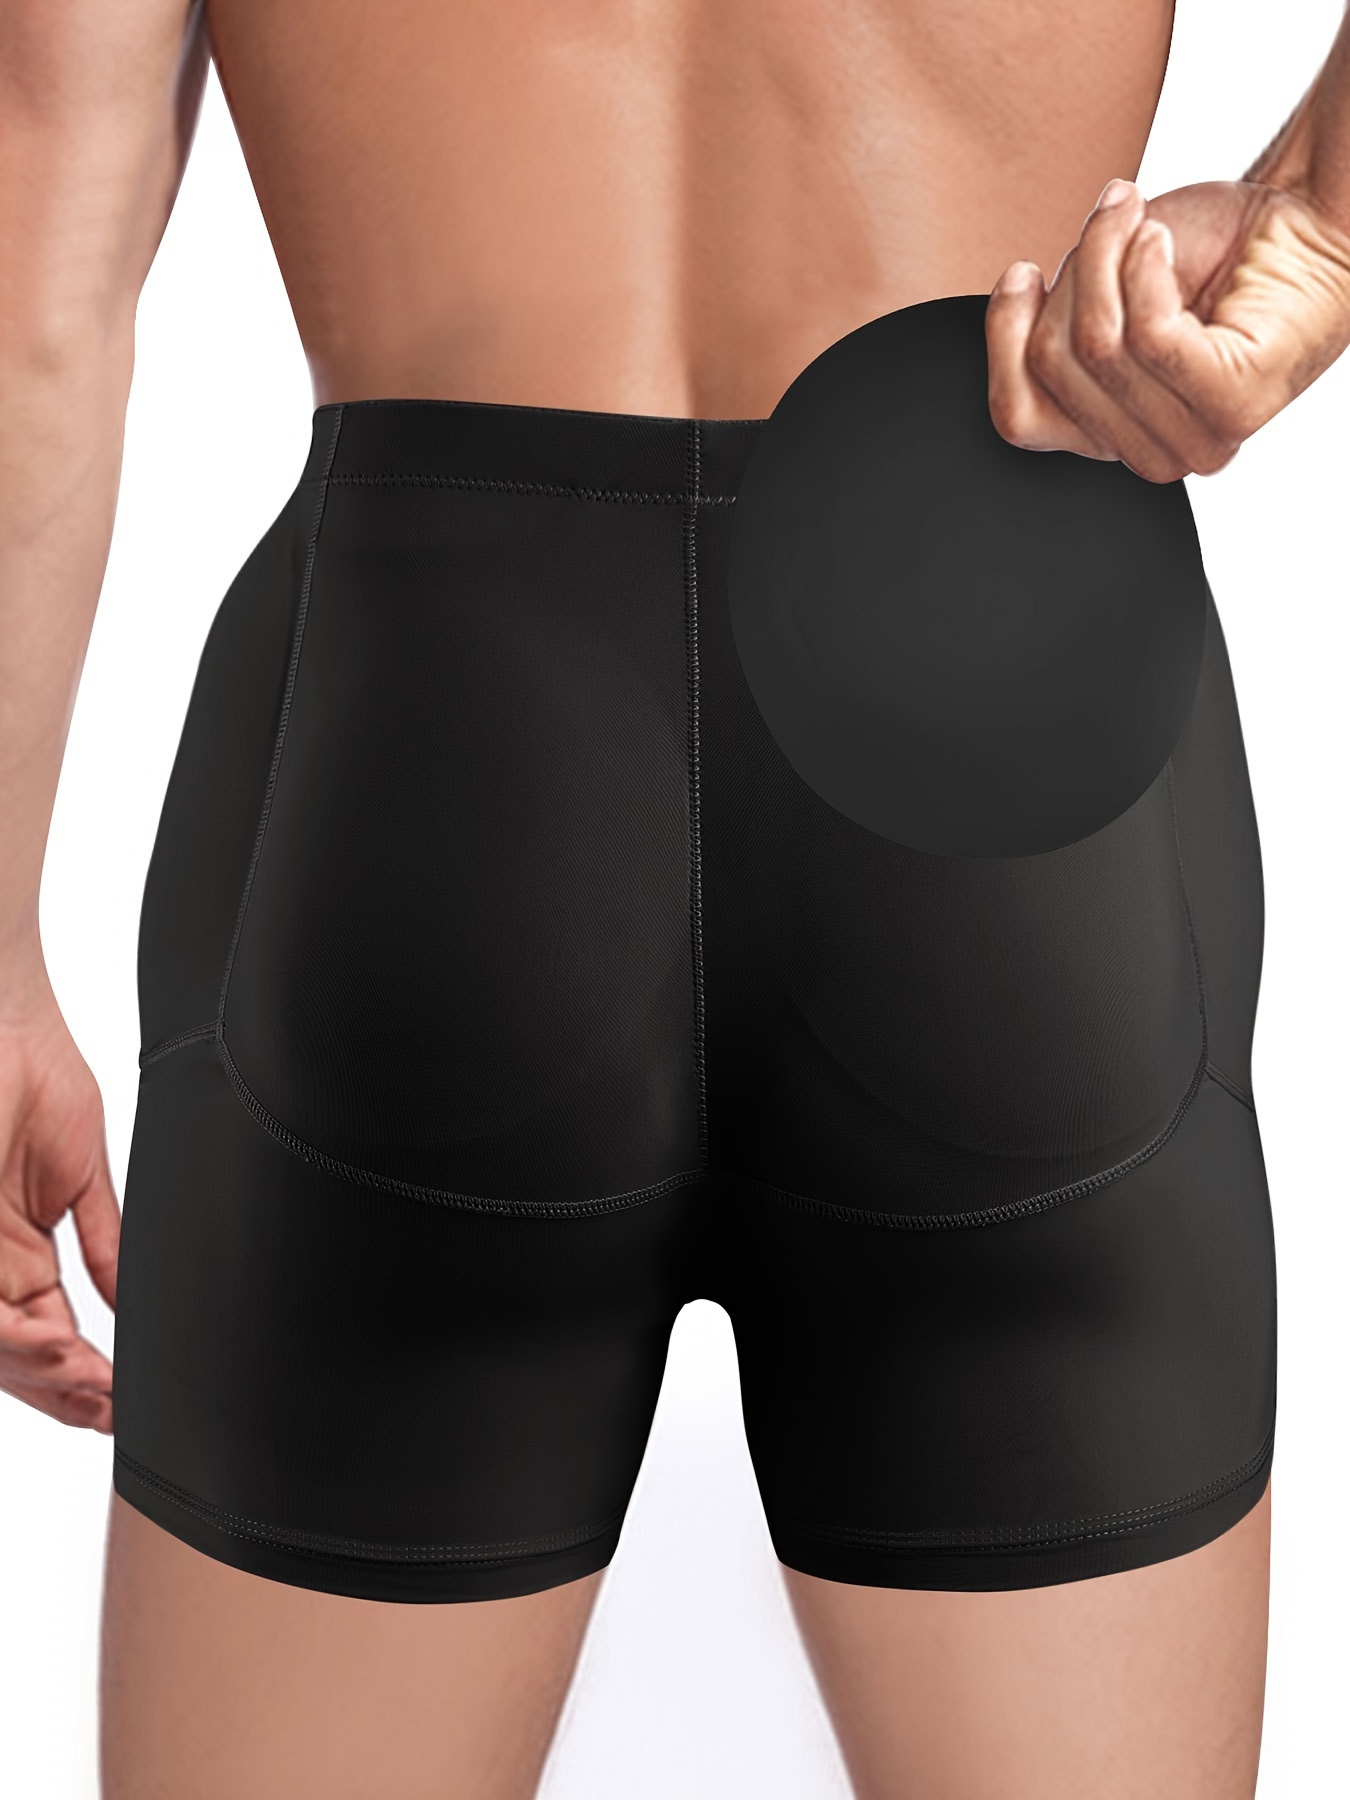 Butt Lifter Padded Underwear Women Hip Pads Enhancer - Temu